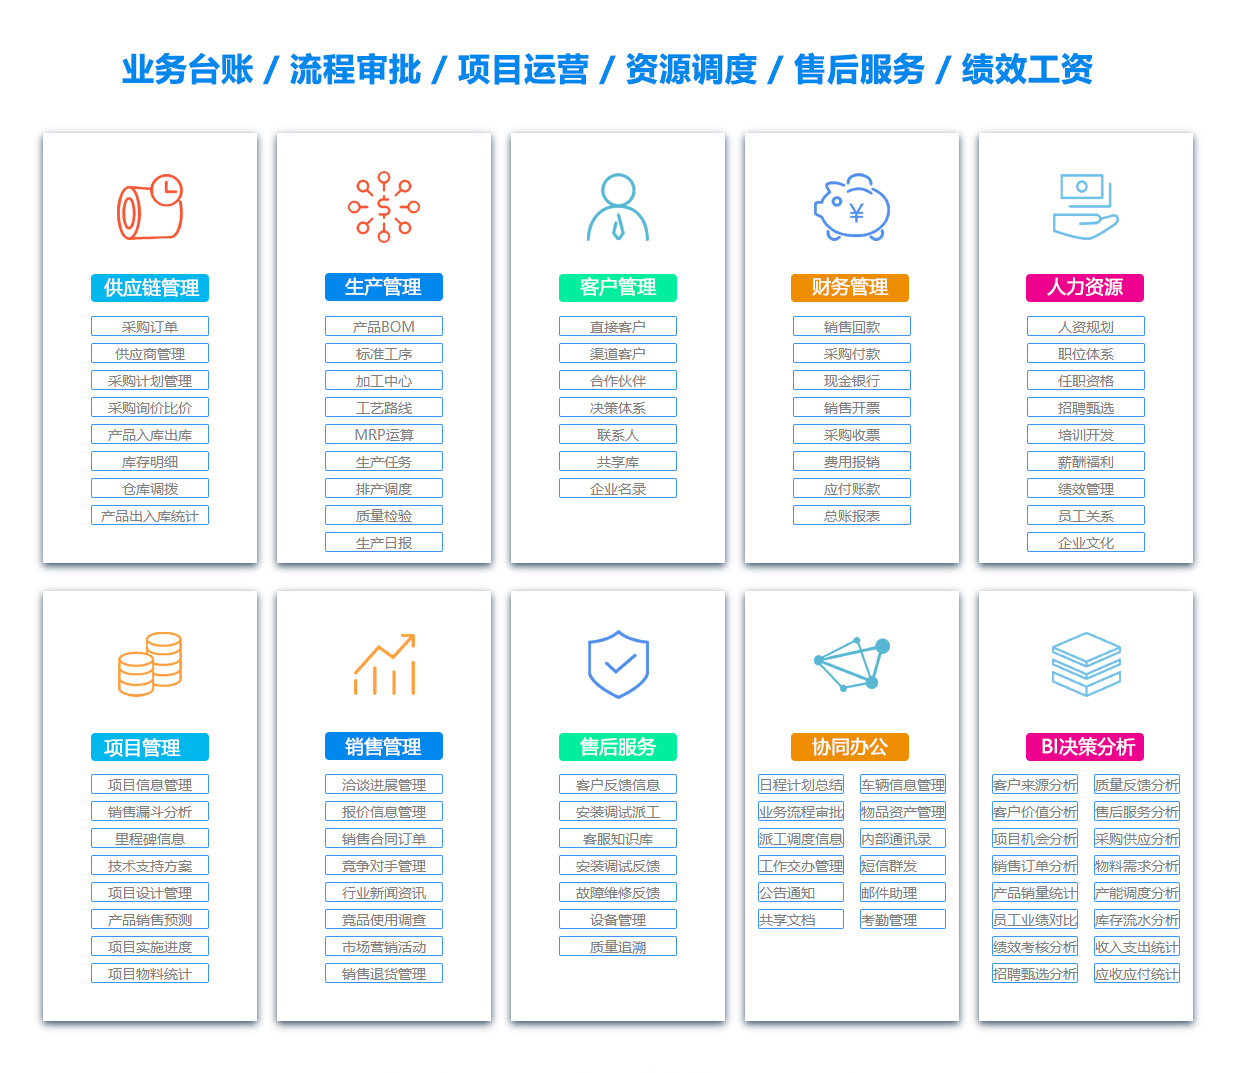 忻州SCM:供应链管理系统